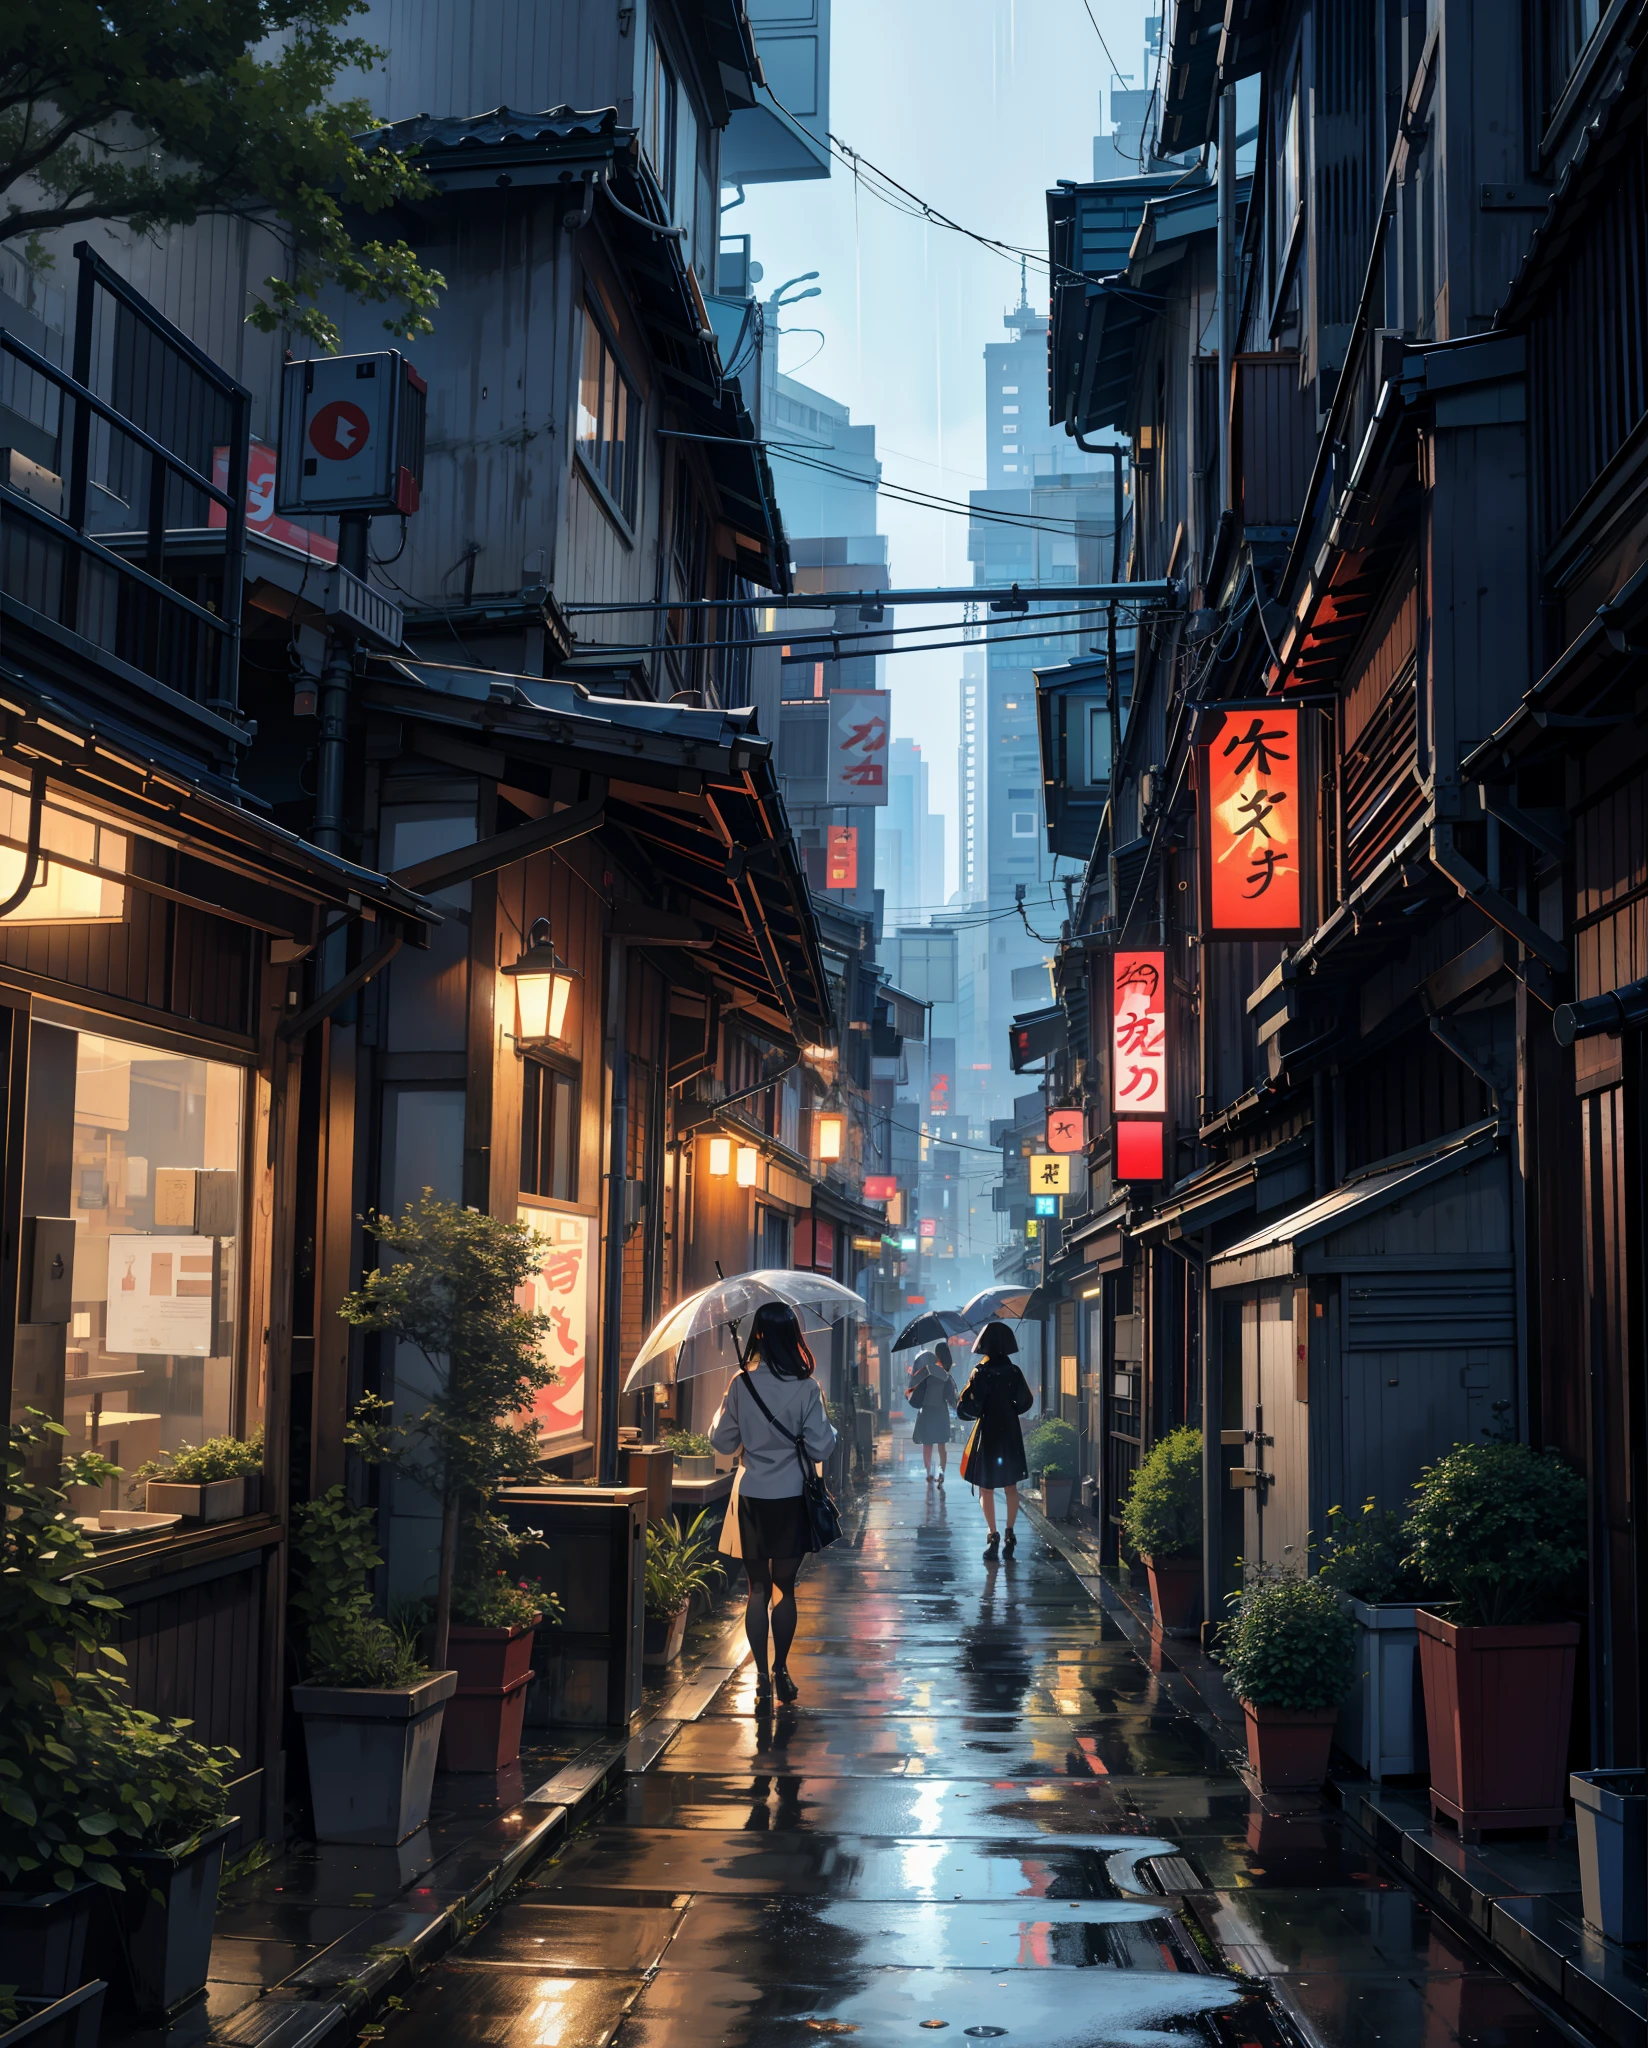 雨の日の東京の街の絵, 路地 , 美しい景色, 降雨,濡れた舗装道路 ((輝く表情)),高解像度, 高品質, 水の反射, 茂み,4k 高解像度, 雲,beautiful art u高解像度 4 k, 美しいアートワークのイラスト, 美しいデジタル絵画, 非常に詳細なデジタル絵画, 美しいデジタルアート, 詳細な絵画 4k, 非常に詳細なデジタル絵画, 豊かな絵のような色彩, ゴージャスなデジタルペインティング